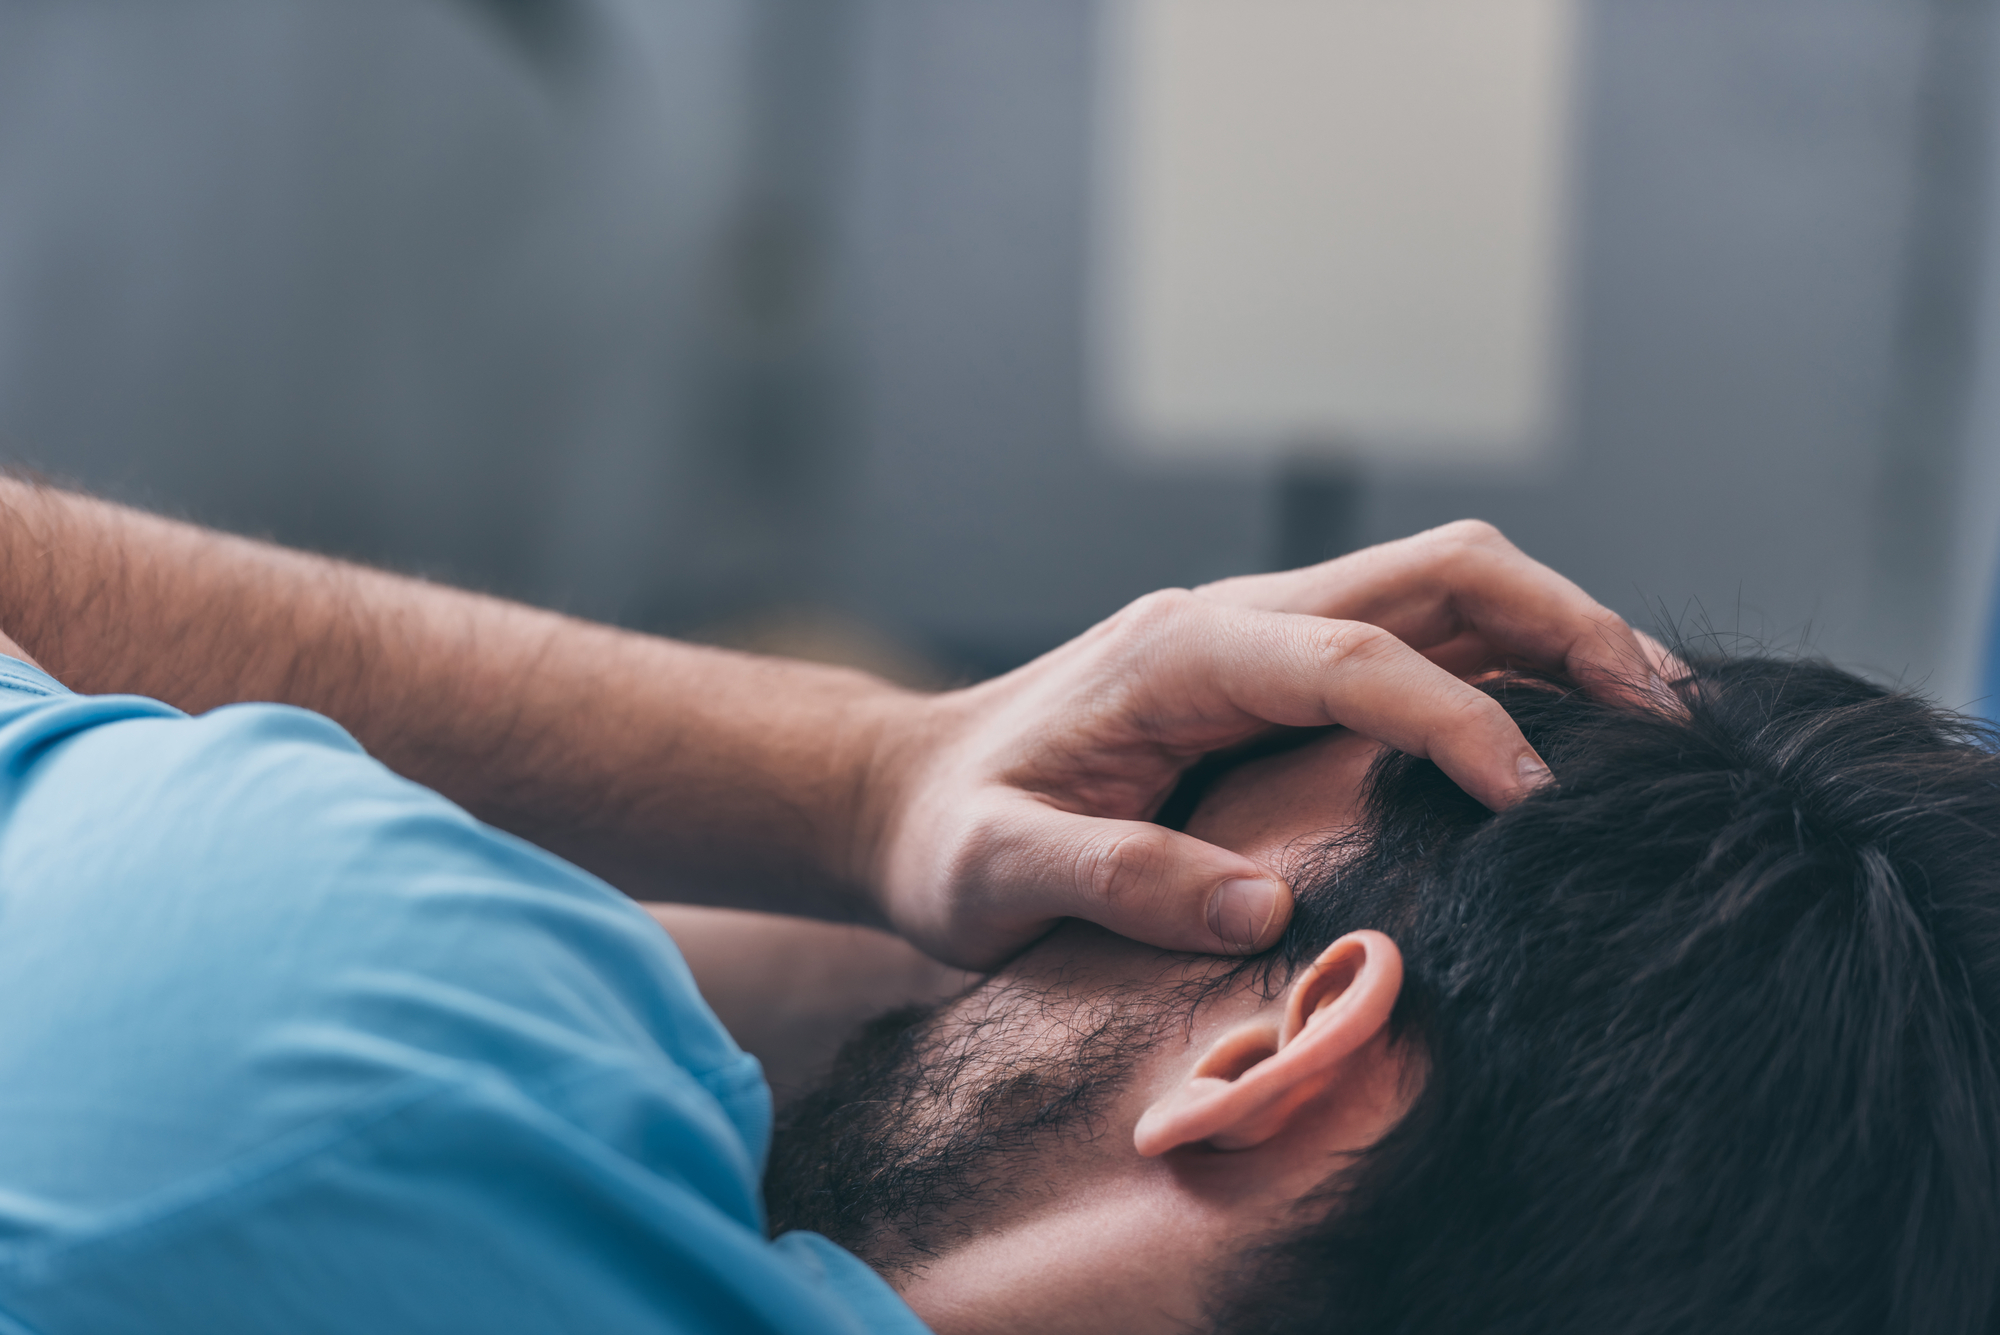 «Стыдно ли мужчине плакать? И как это делать культурно, чтобы не вызвать порицание? » — Яндекс Кью